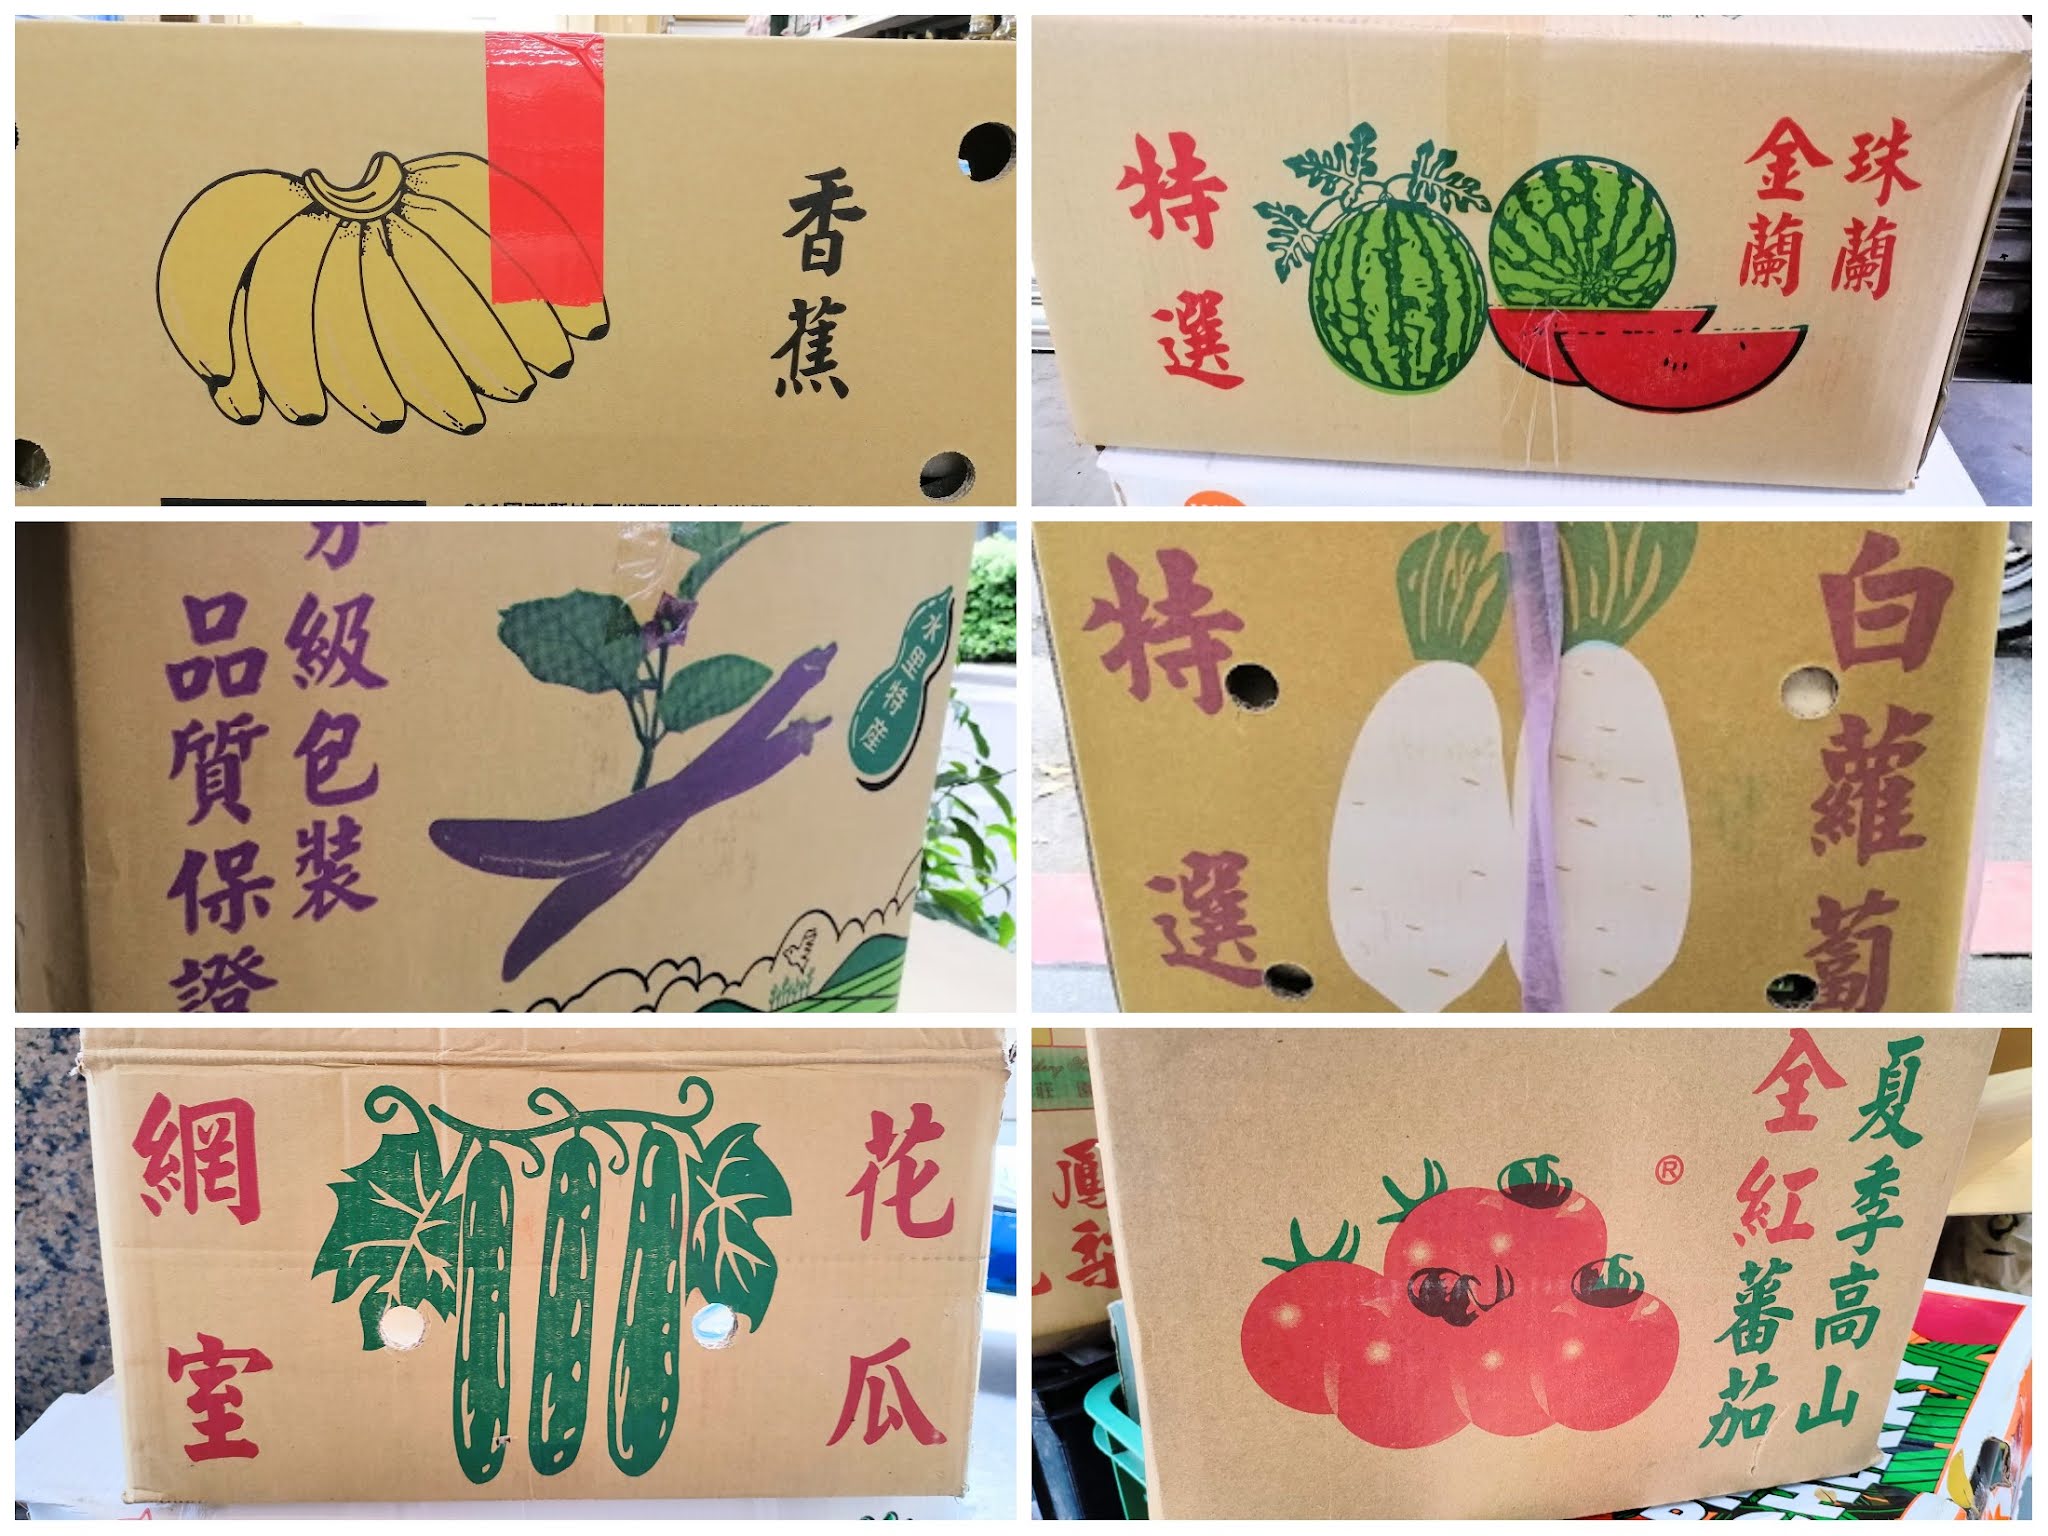 12箱 台湾の野菜 果物の段ボールに描かれているイラストがかわいいのでまとめてみた たぶん明日もアジア